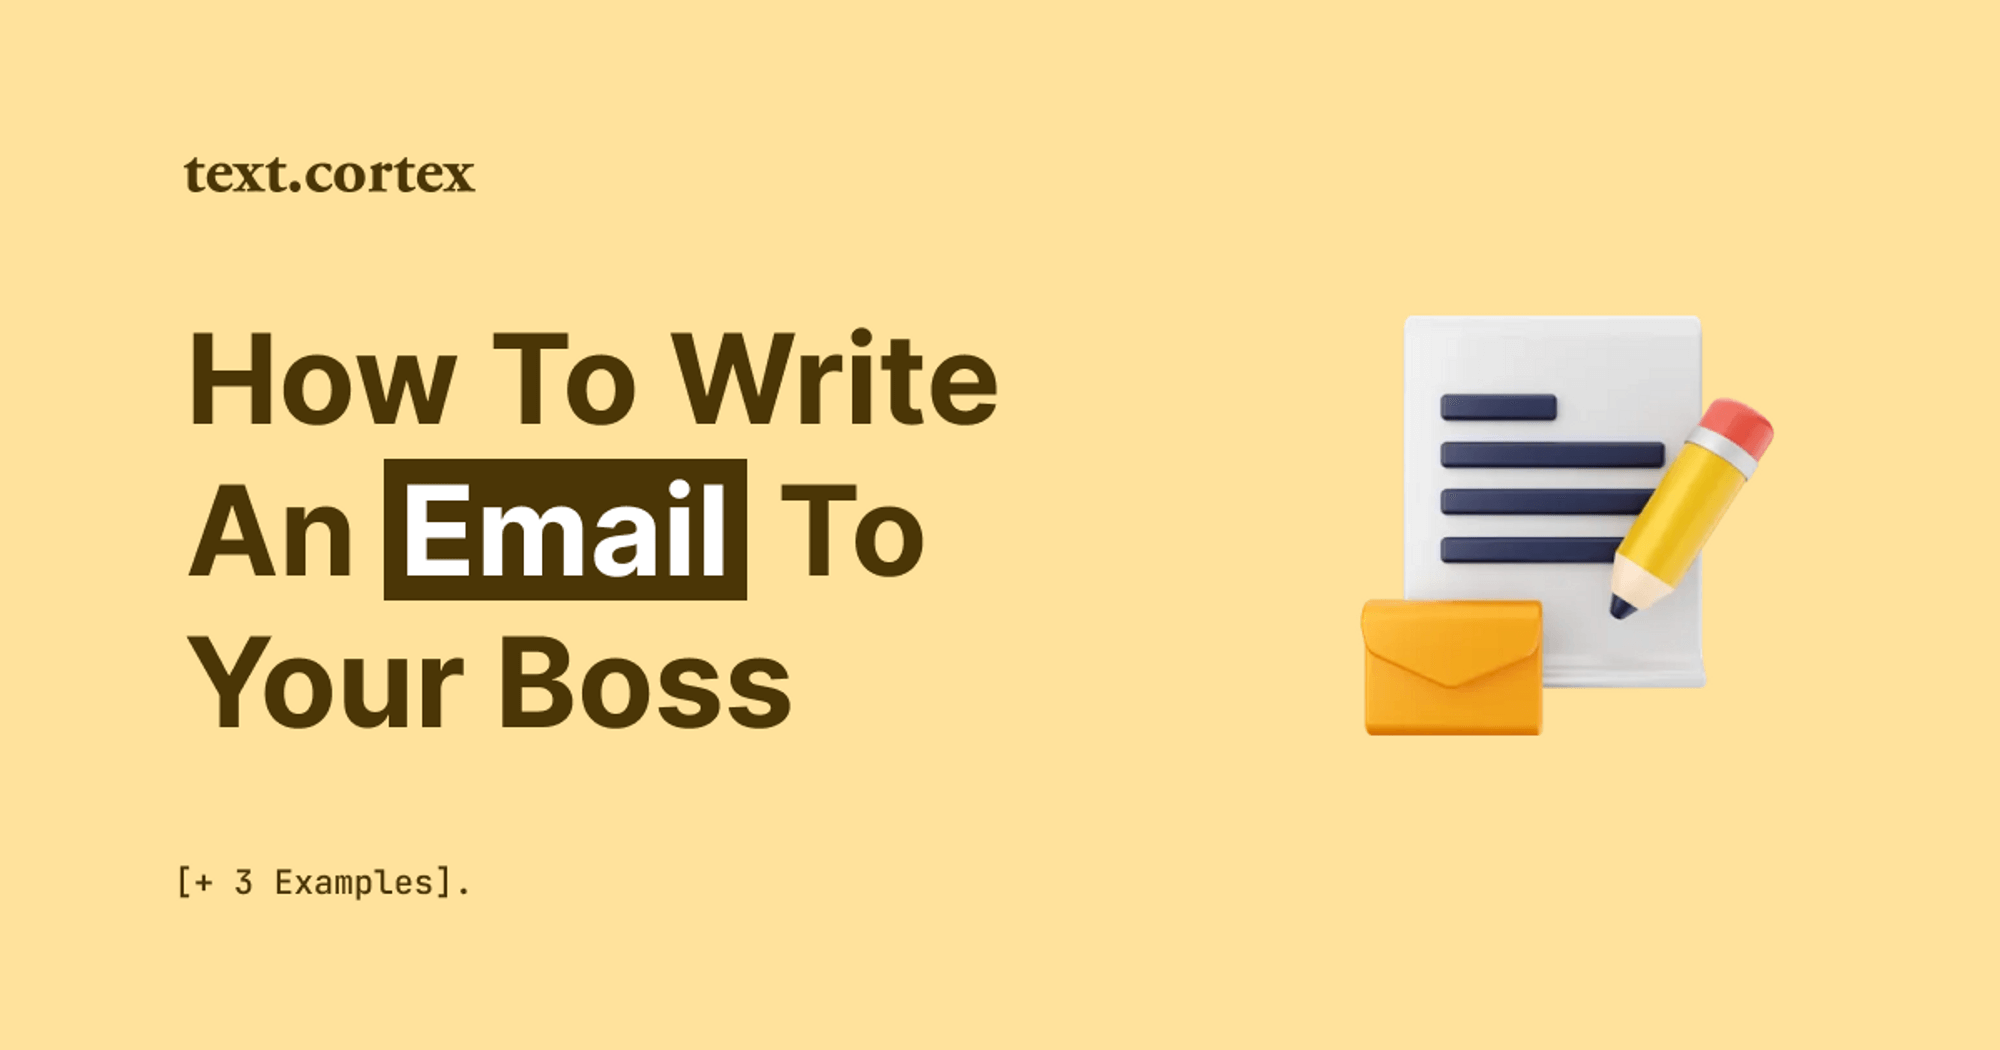 Hoe schrijf je een e-mail naar je baas en manager [+3 voorbeelden]?